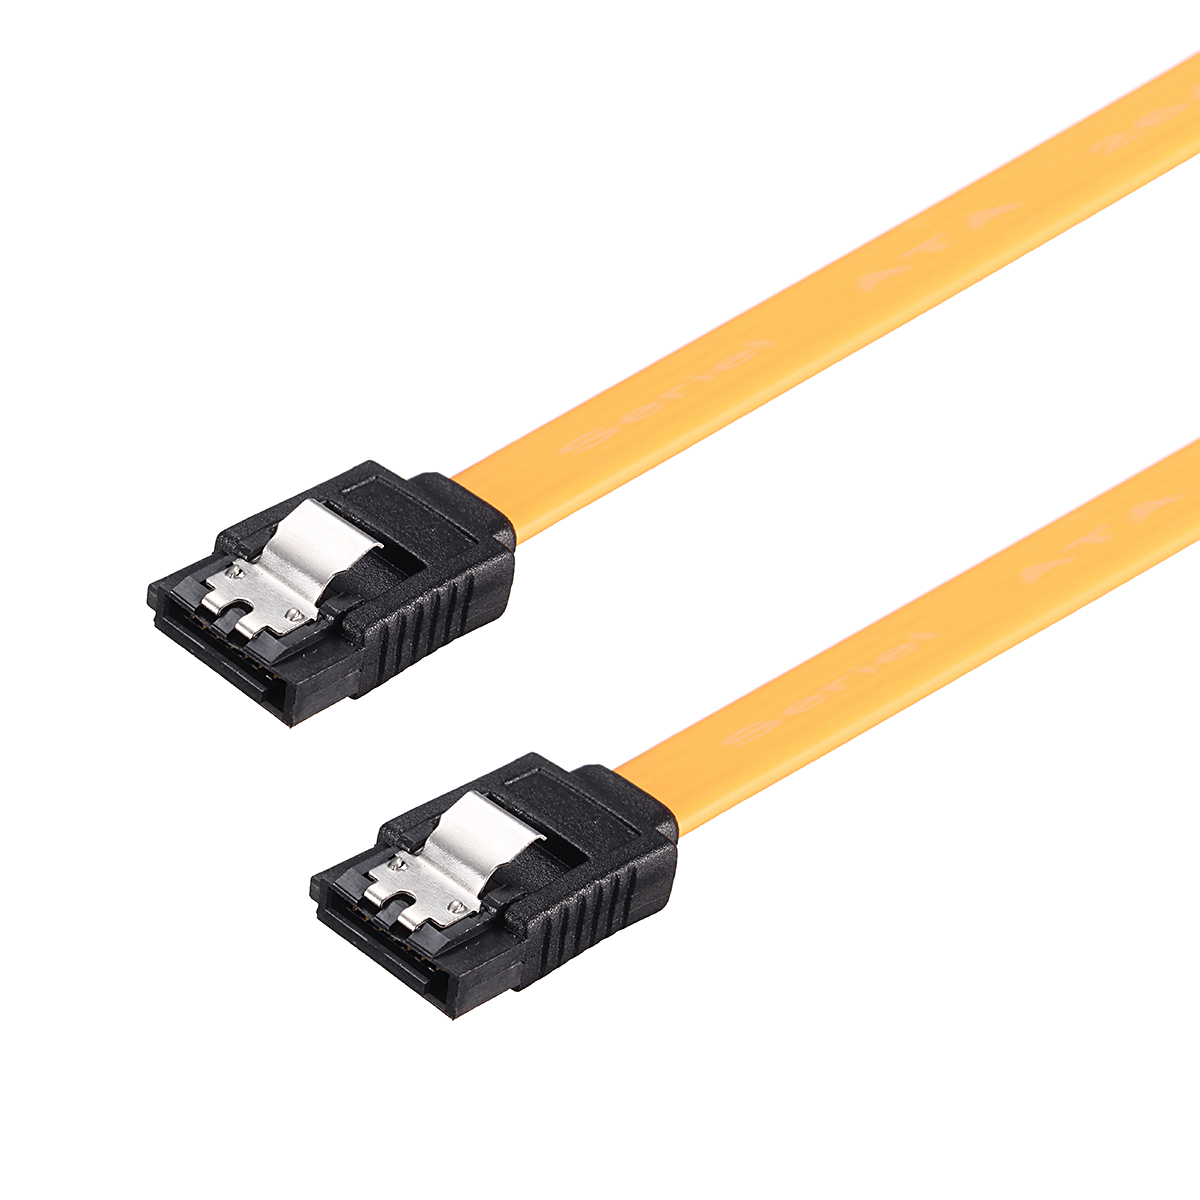 SATA-20-Cable-with-a-Shrapnel-Clip-SATA-Hard-Drive-Data-Line-1167267